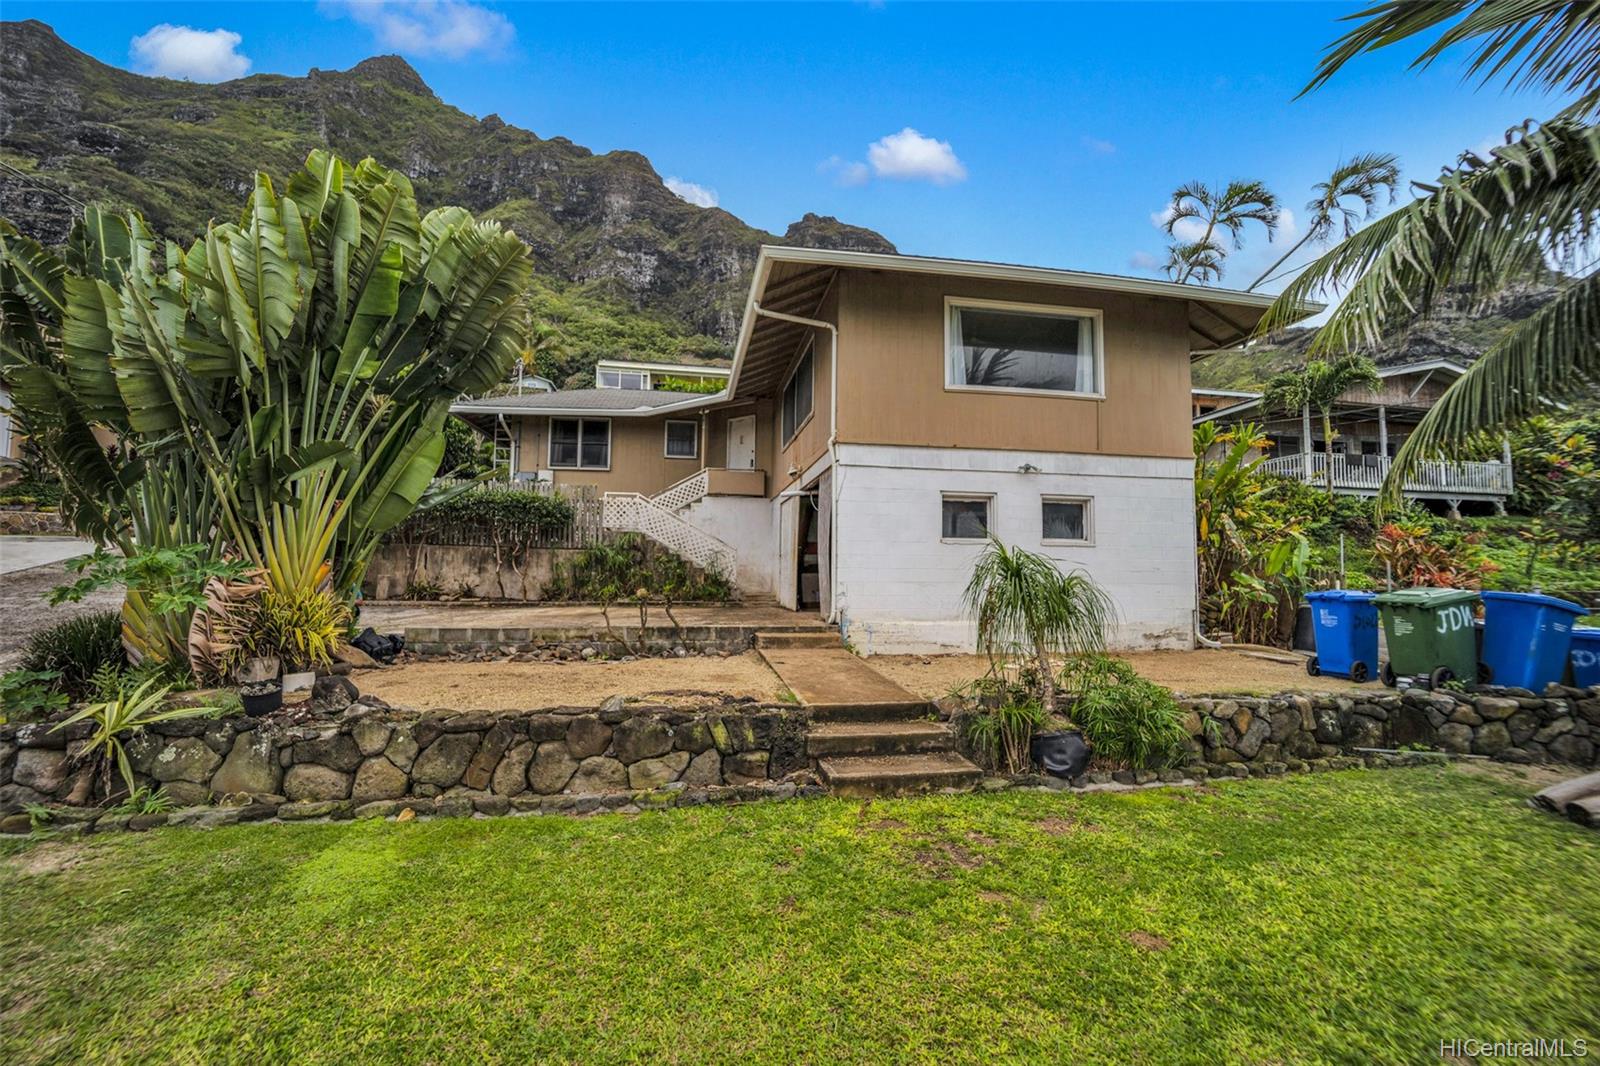 Koolauloa real estate & homes for sale - Oahu  Hawaii House